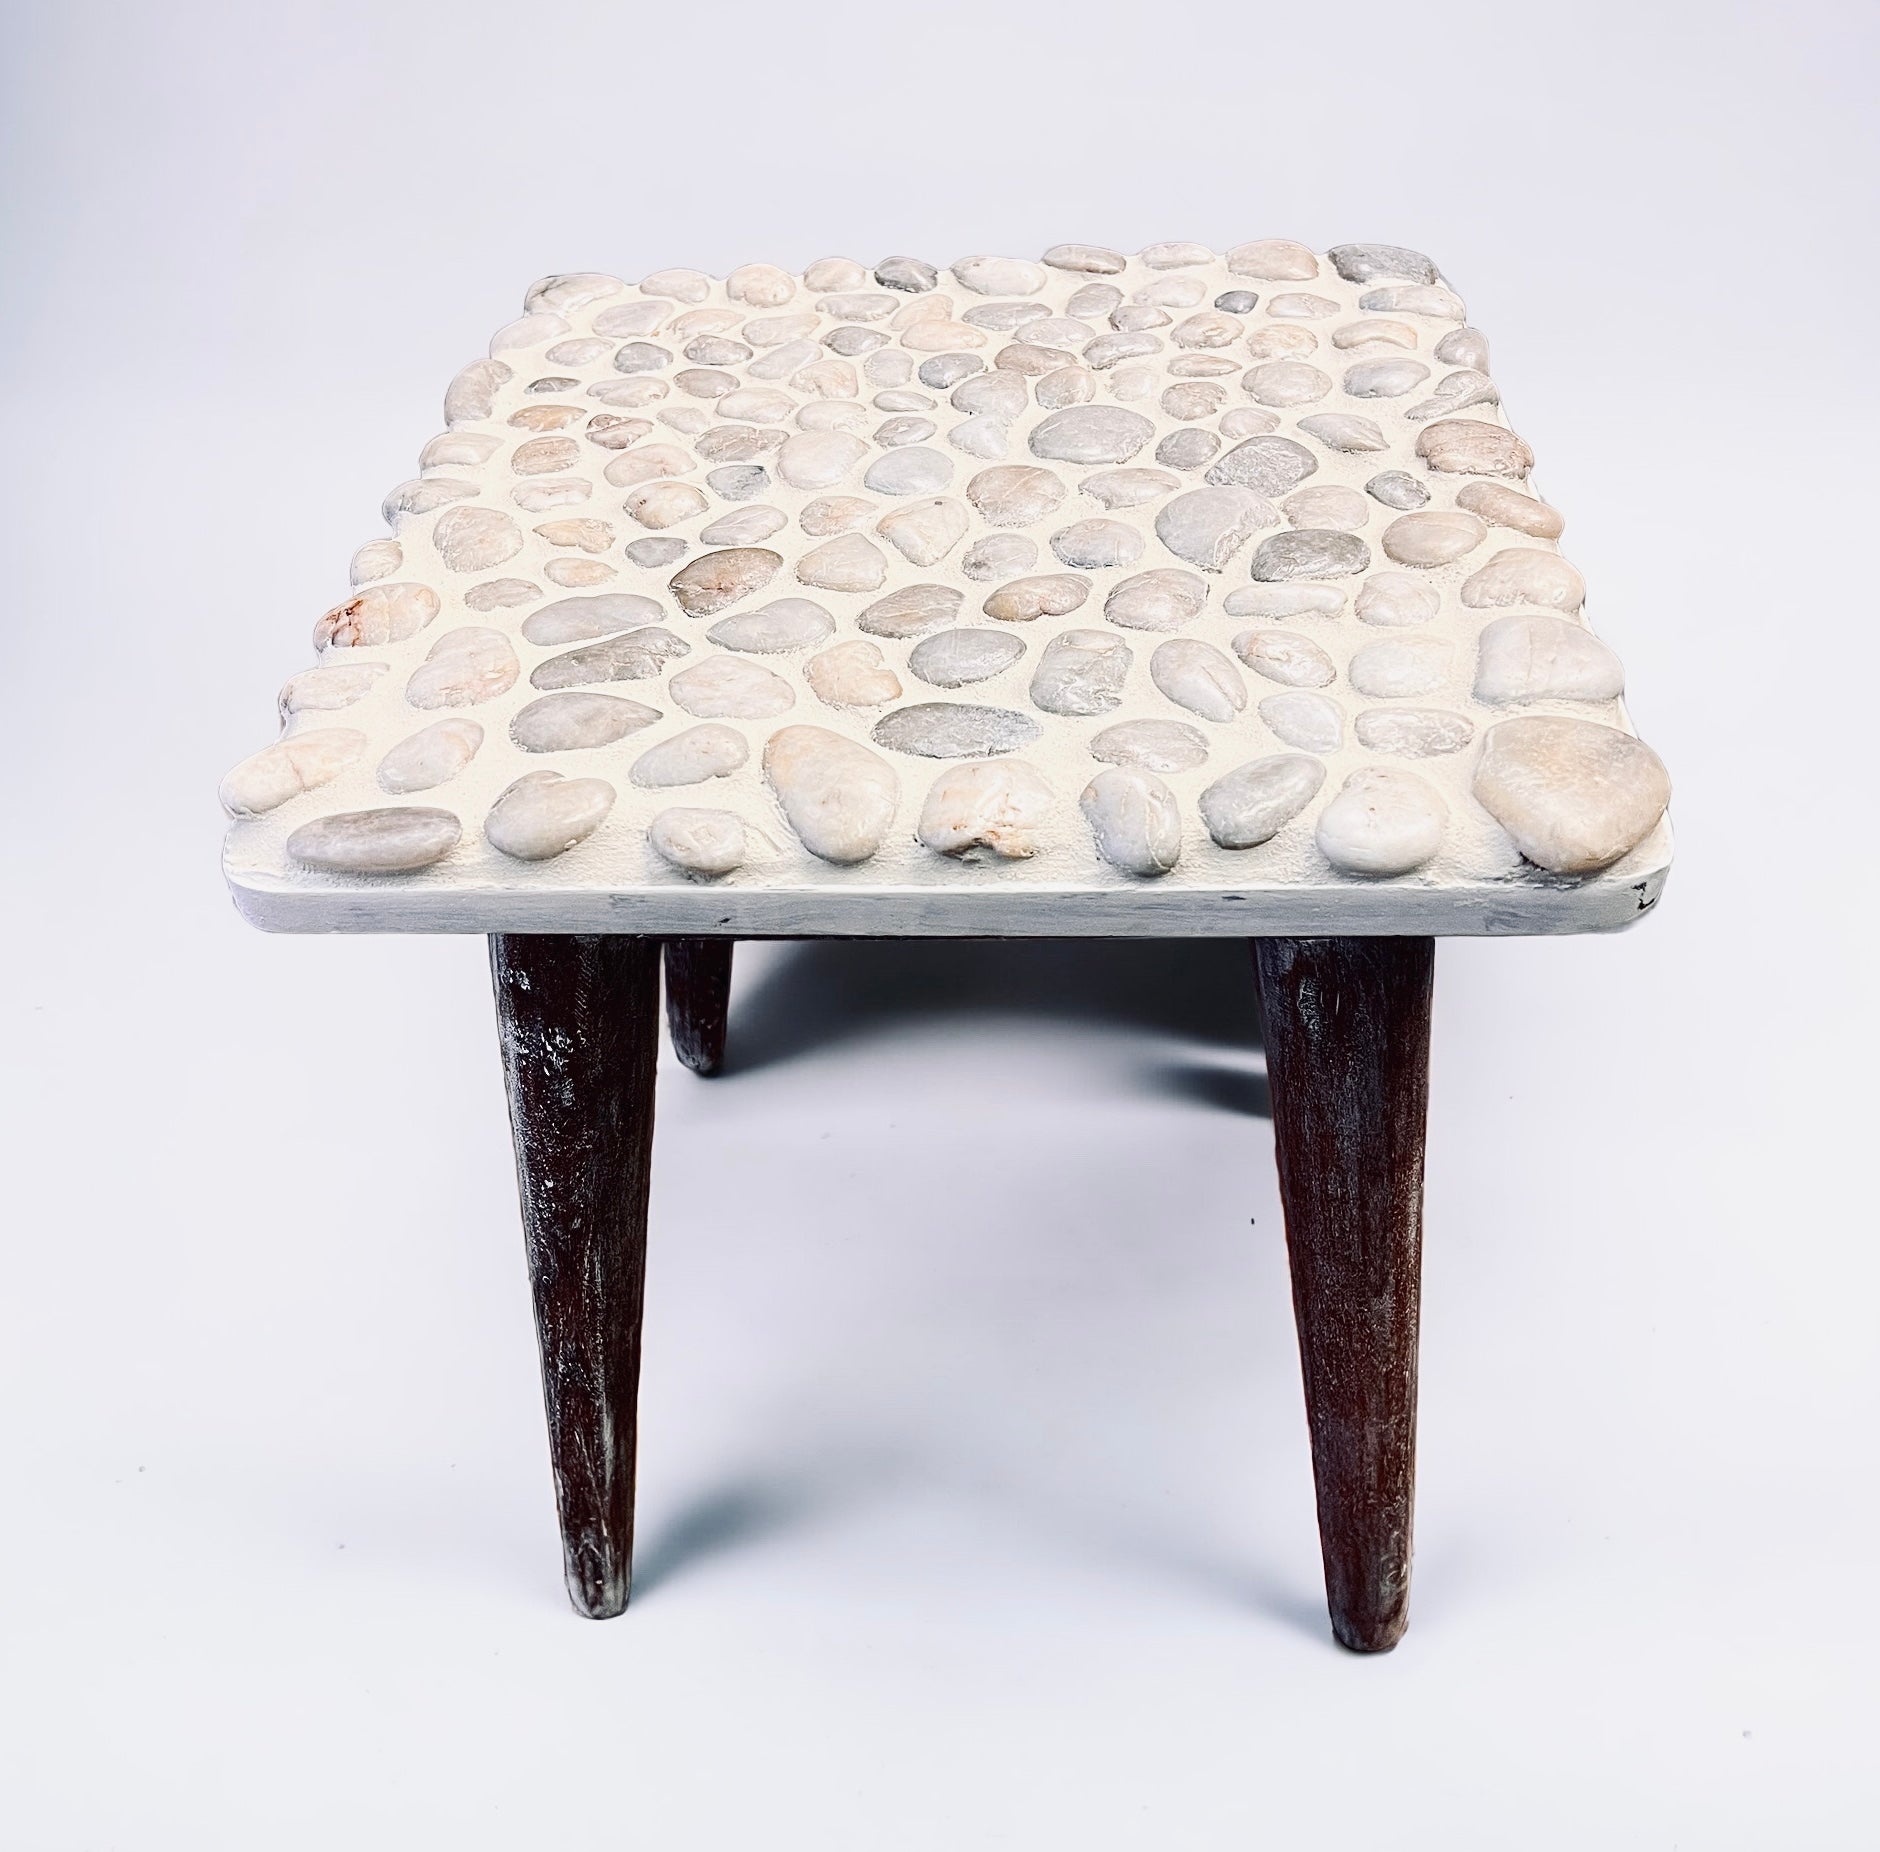 Pebbled Stone Handmade Table